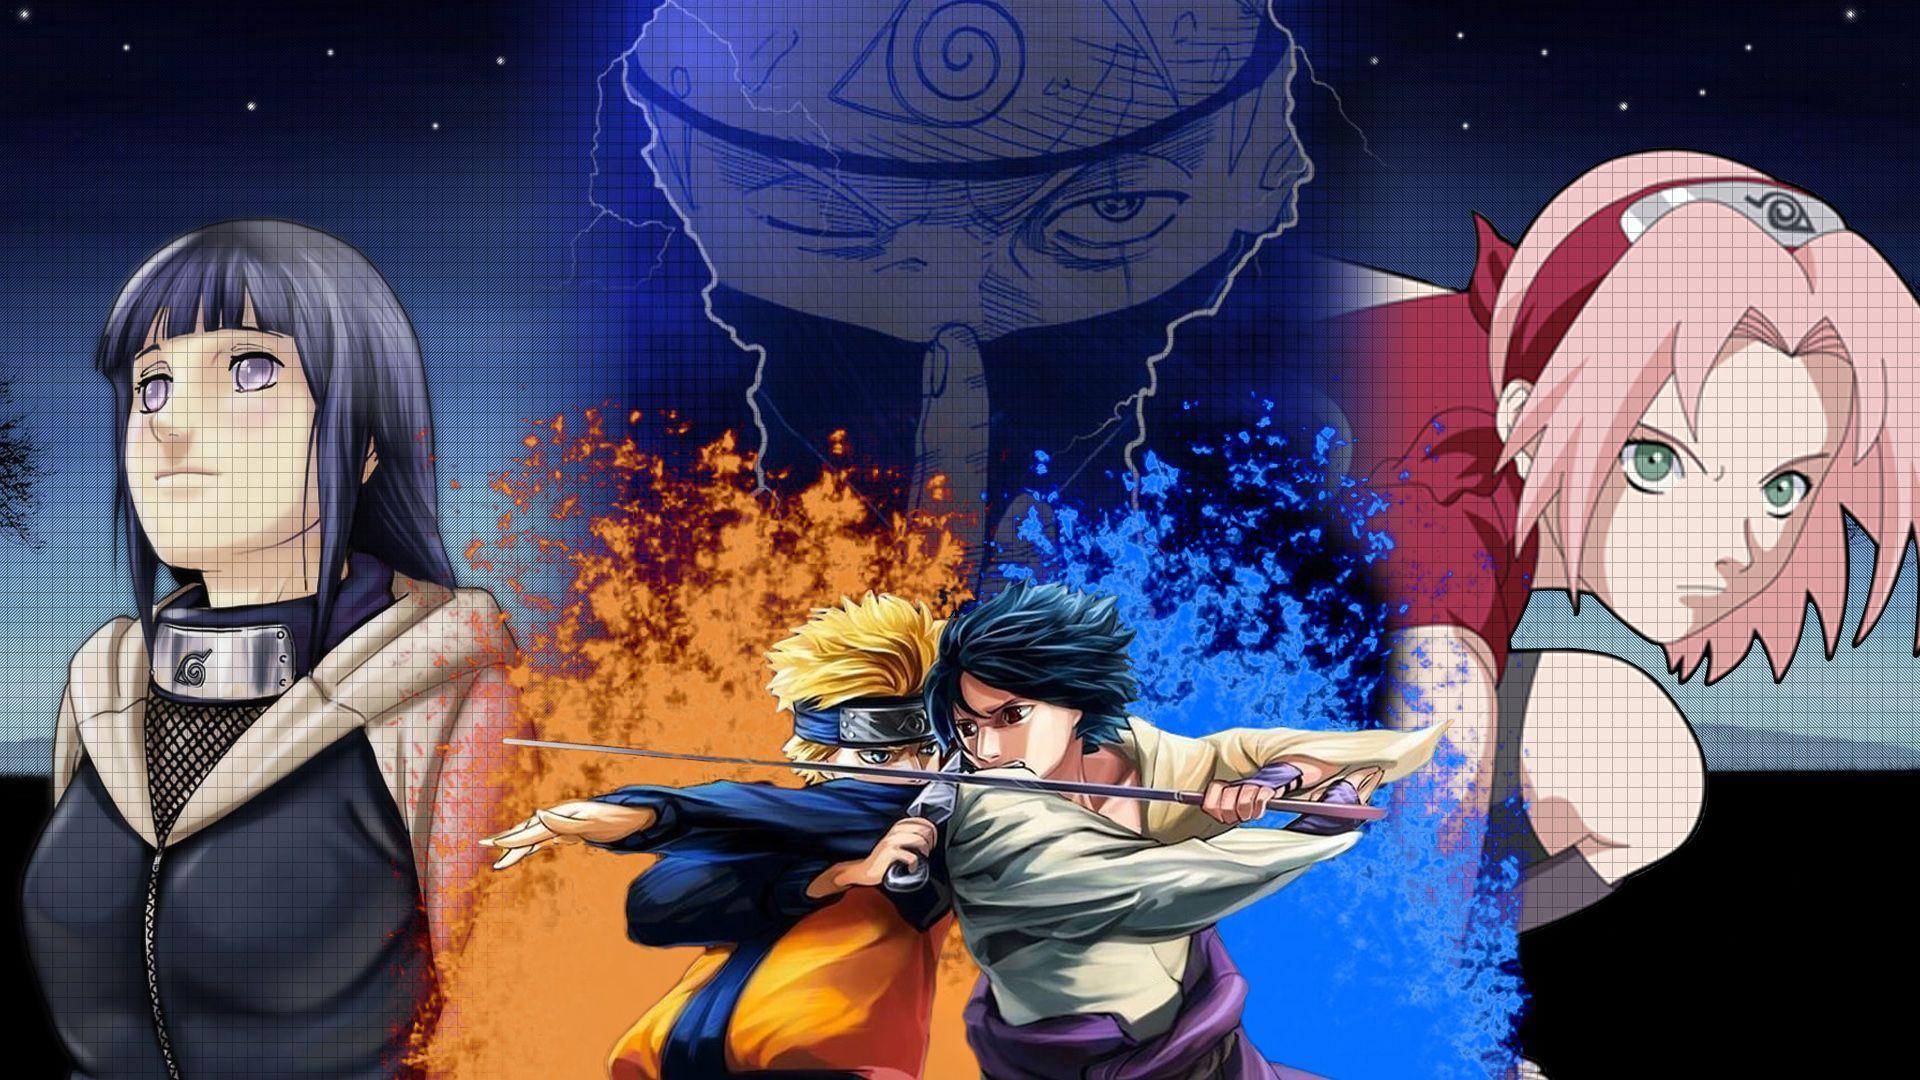 Pin On Hình Ảnh Naruto Vs Hinata Ngọt Ngào Hạnh Phúc Nhất Hình Ảnh Naruto   Hinata Đẹp Nhất